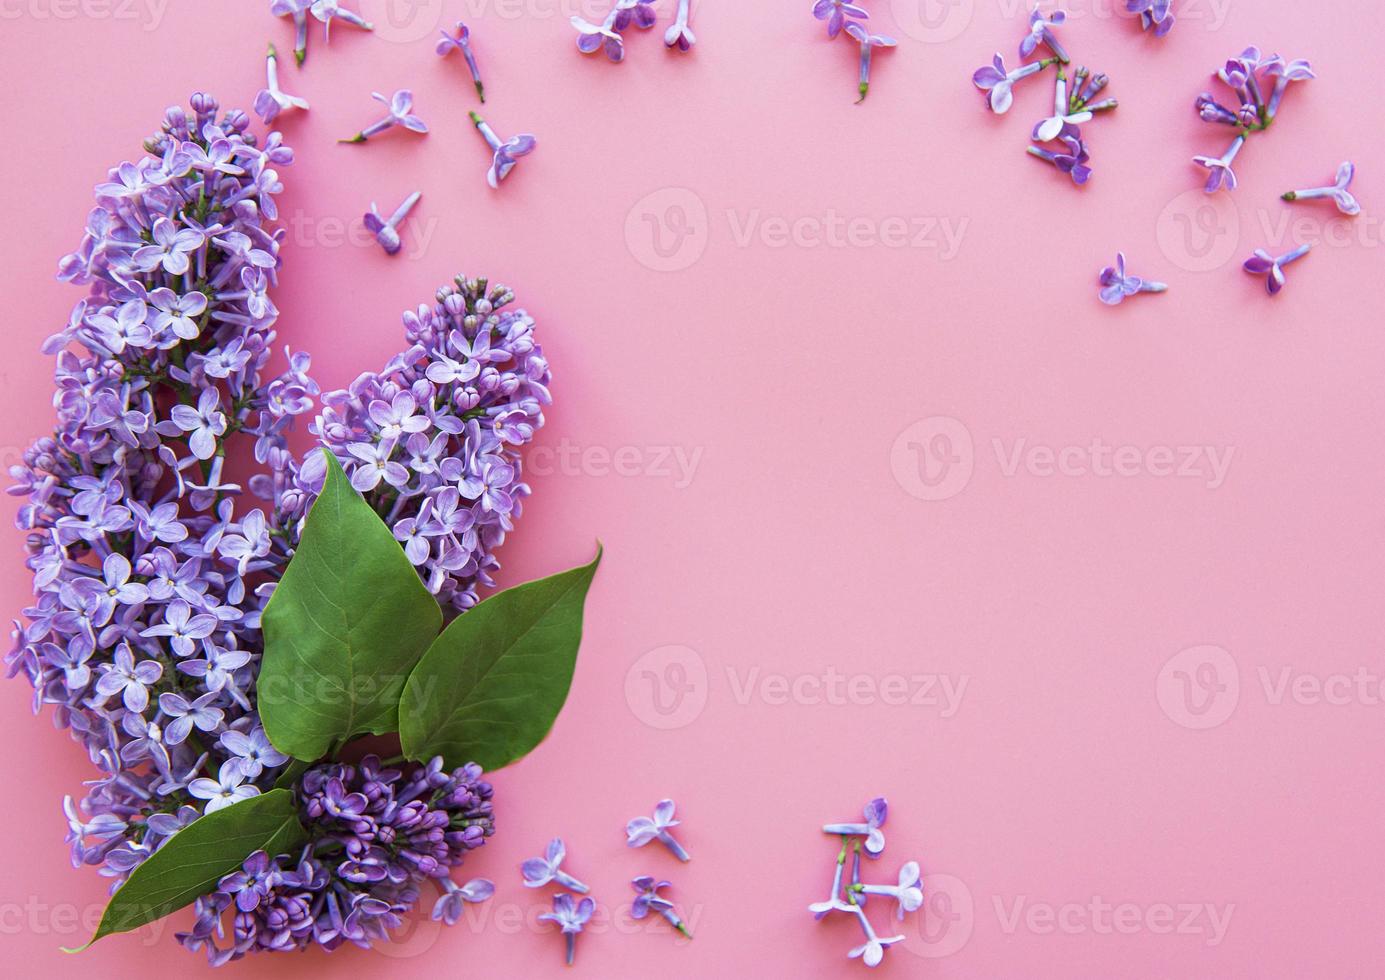 marco de ramas y flores de color lila 2978996 Foto de stock en Vecteezy